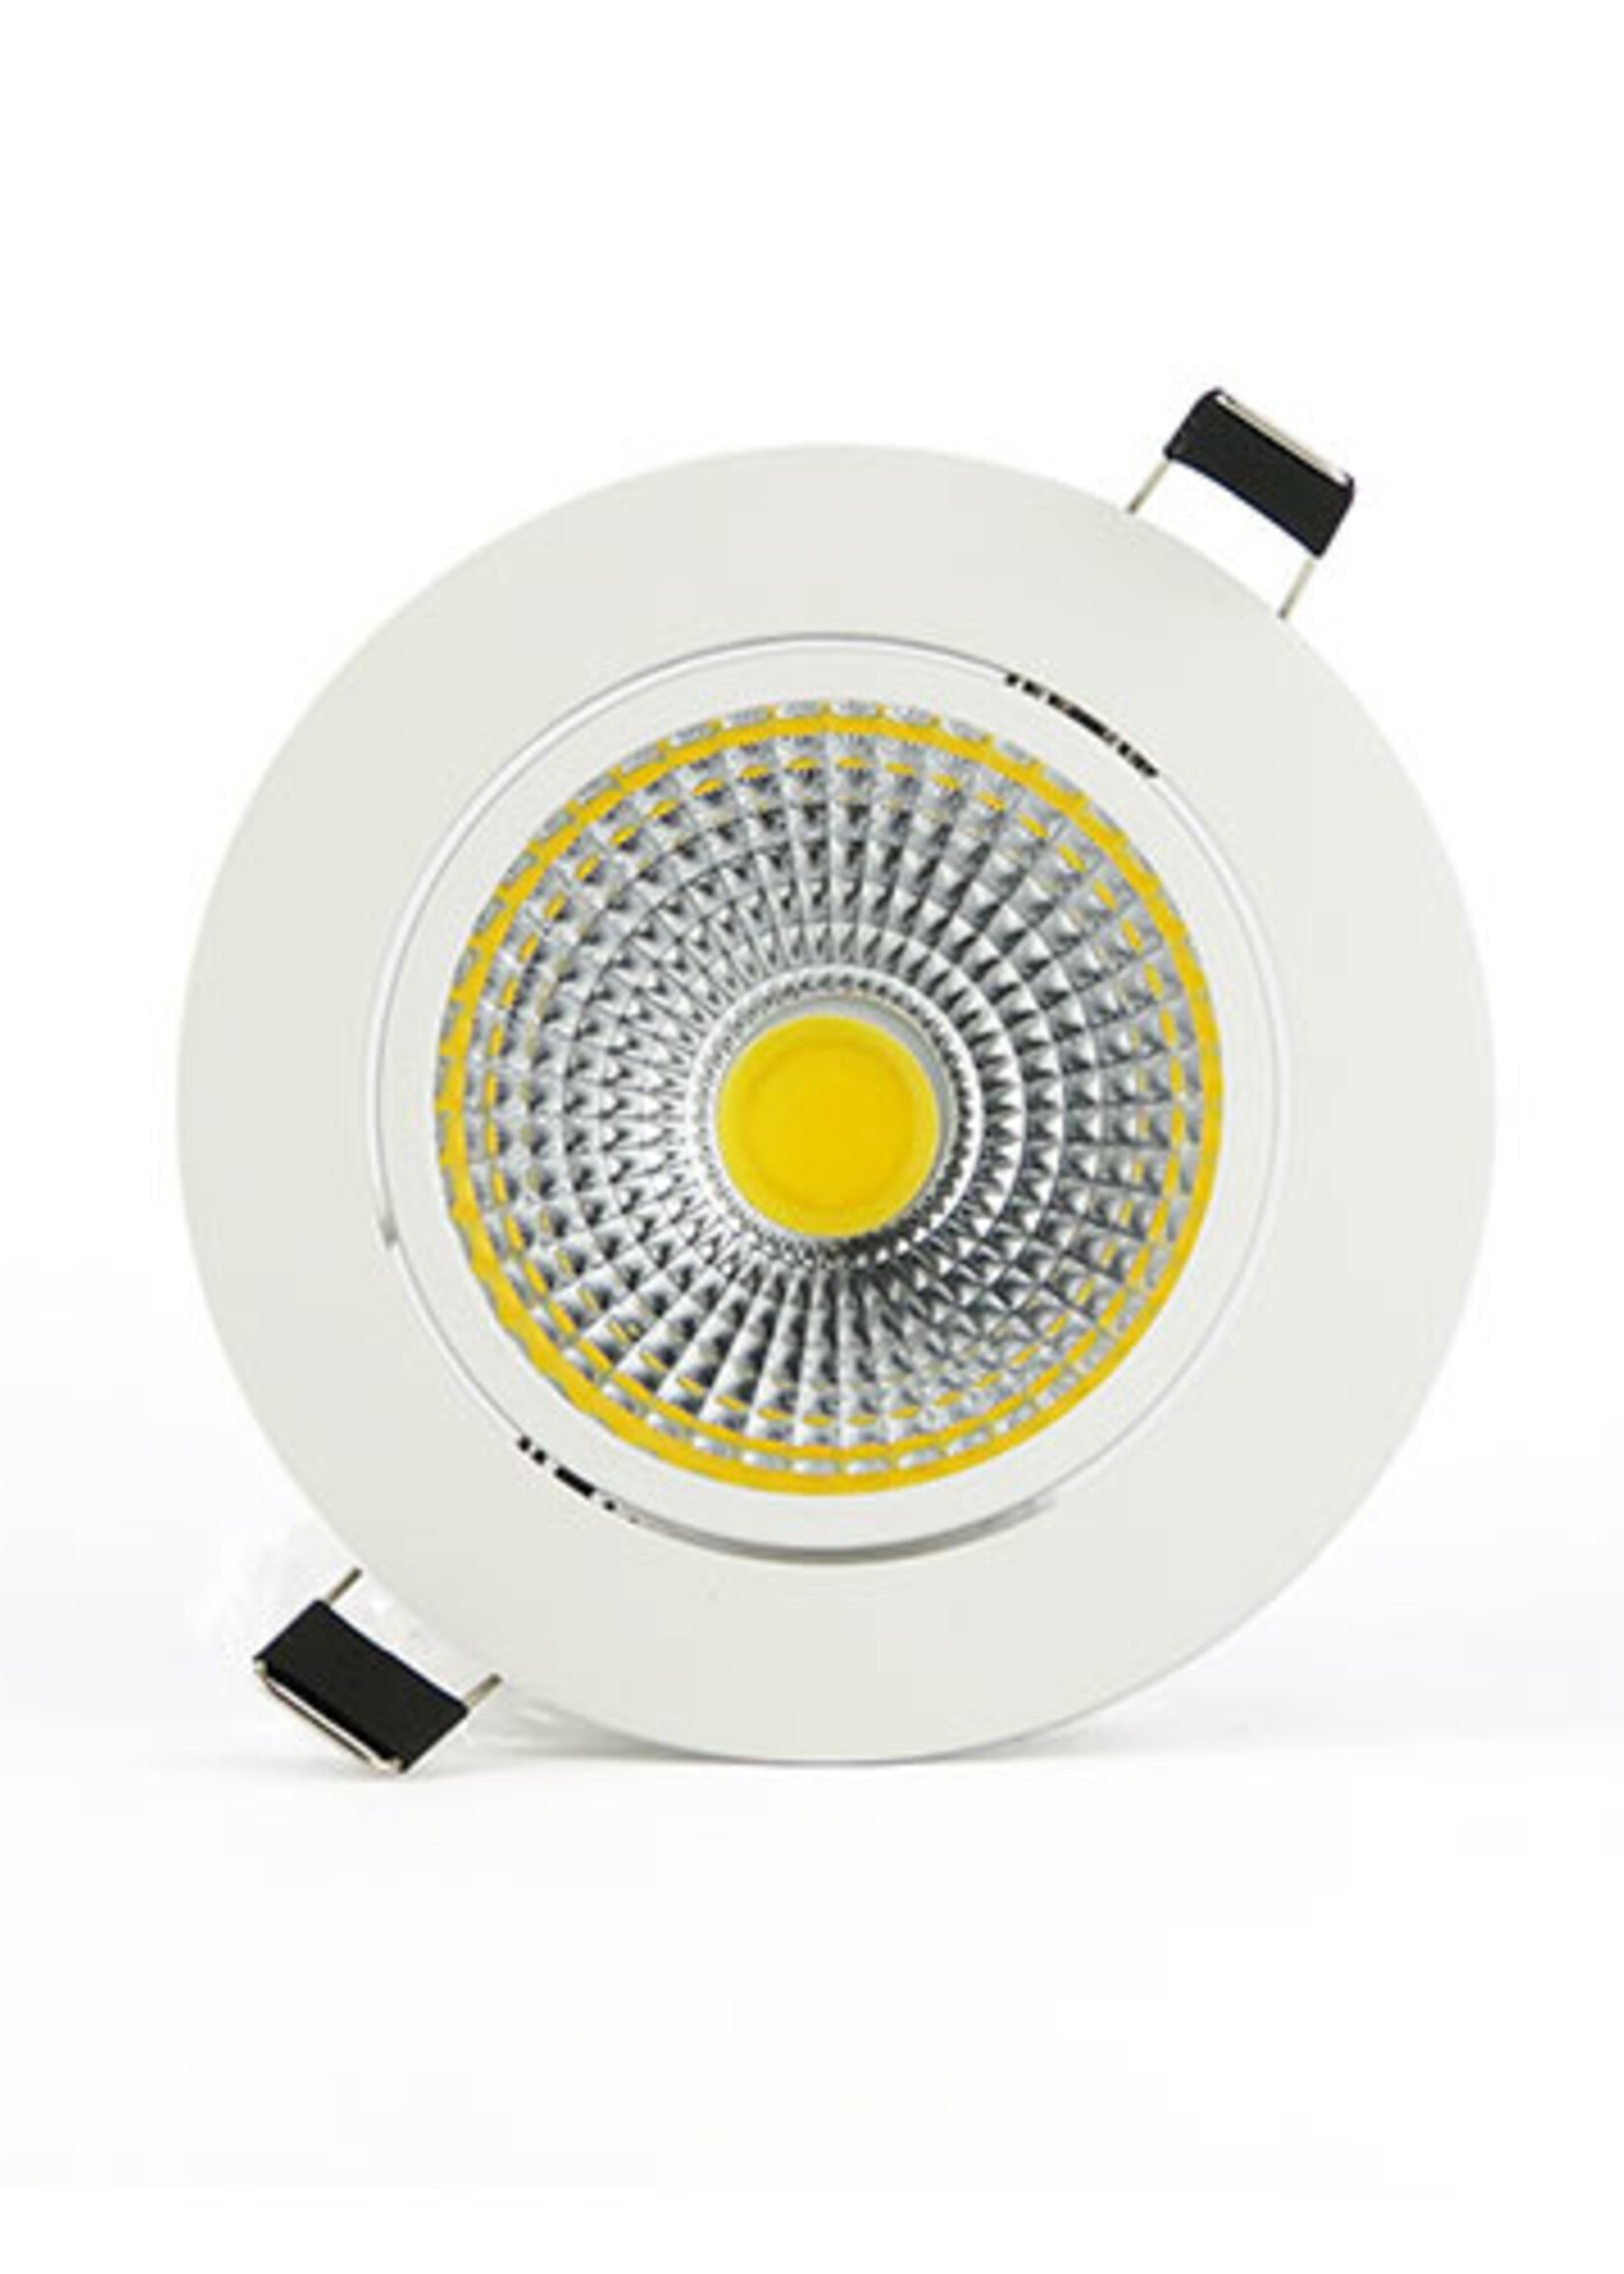 LEDWINKEL-Online LED Inbouwspot 7W 2700K warm wit ⌀110mm dimbaar kantelbaar